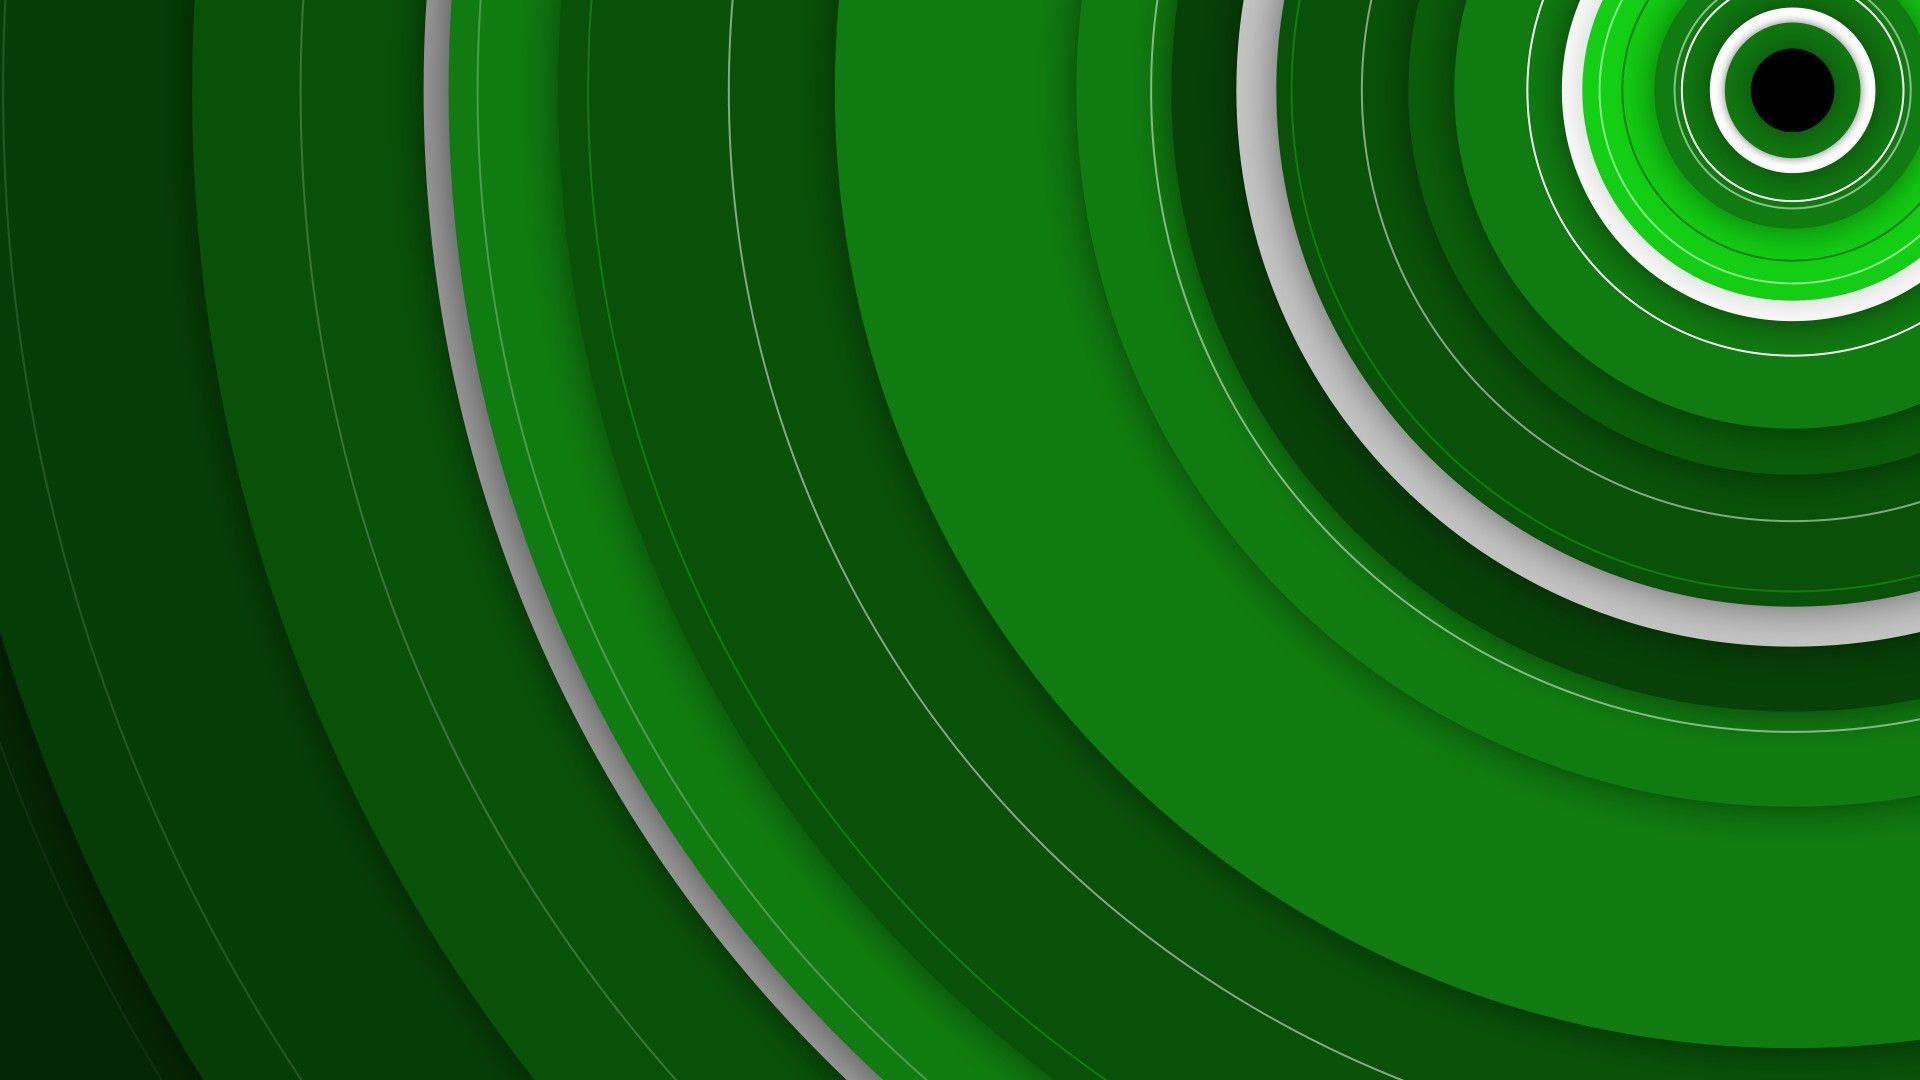  Die Besten Hintergrundbild 1920x1080. Free download Xbox One Unsere kleine Sammlung der besten Hintergrundbilder [1920x1080] for your Desktop, Mobile & Tablet. Explore Xbox One Galaxy Wallpaper. Xbox One Wallpaper 1080P, Wallpaper for Xbox